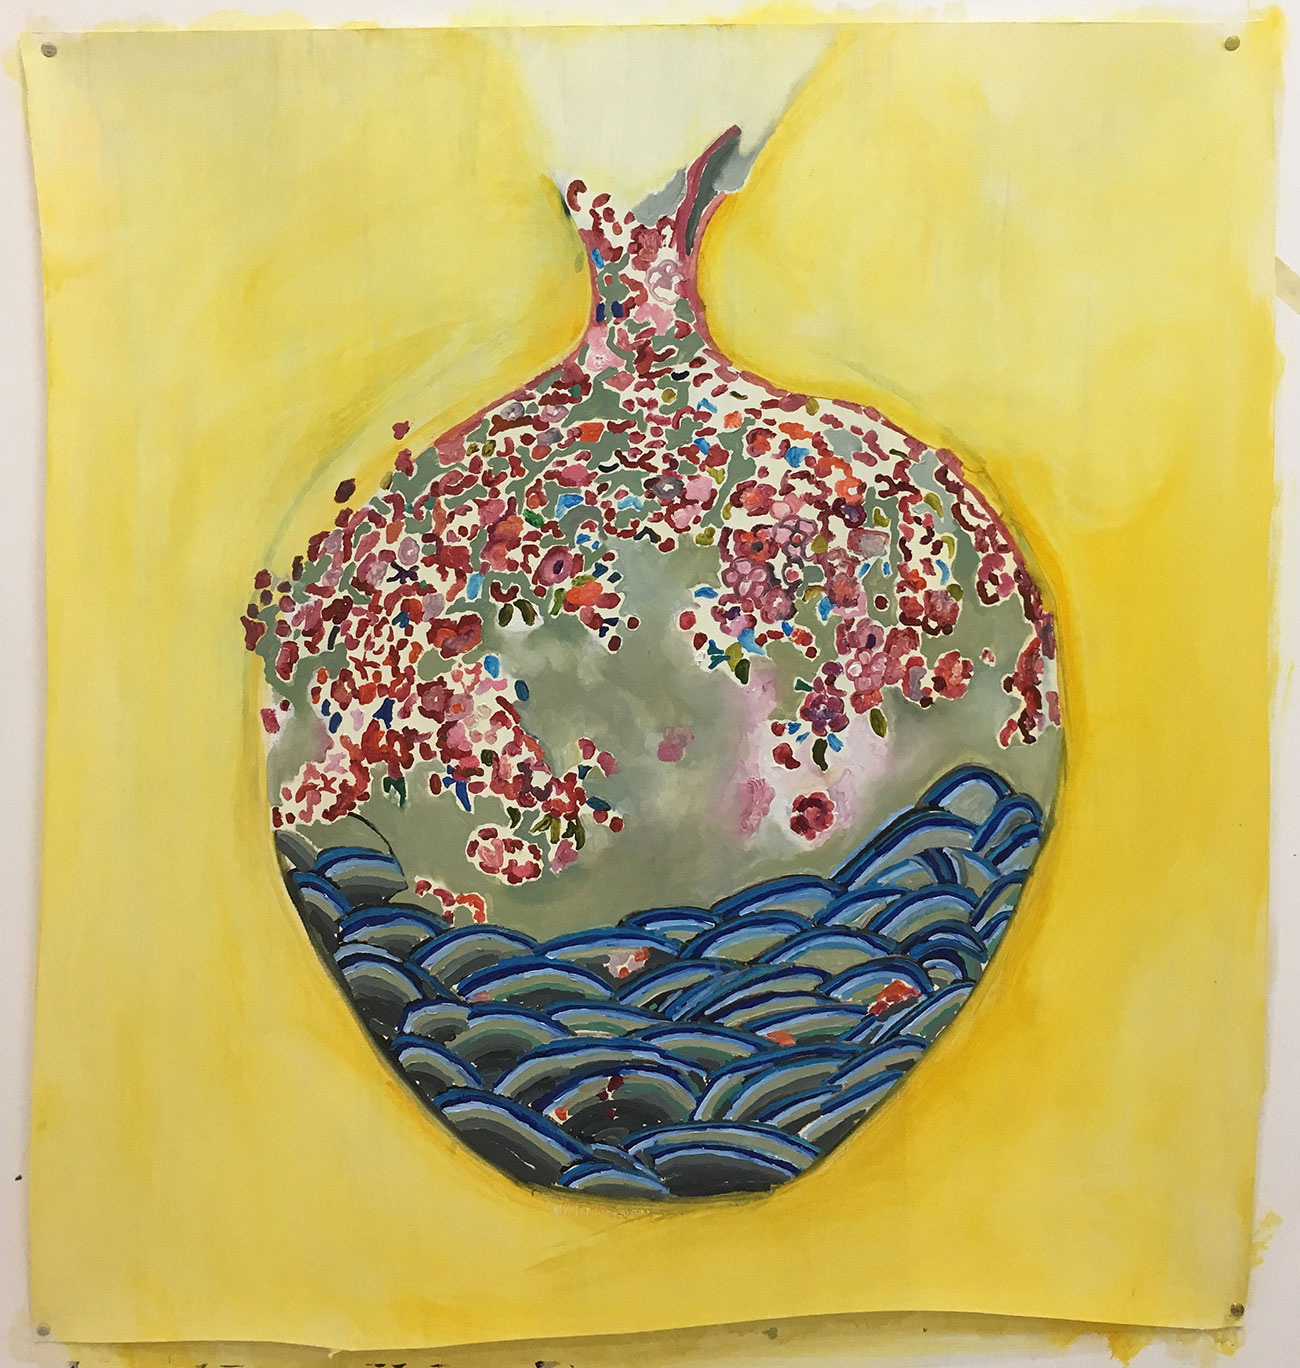 Cerámica Amarilla, 2018 - Oil on paper 0,90 × 0,85 cm